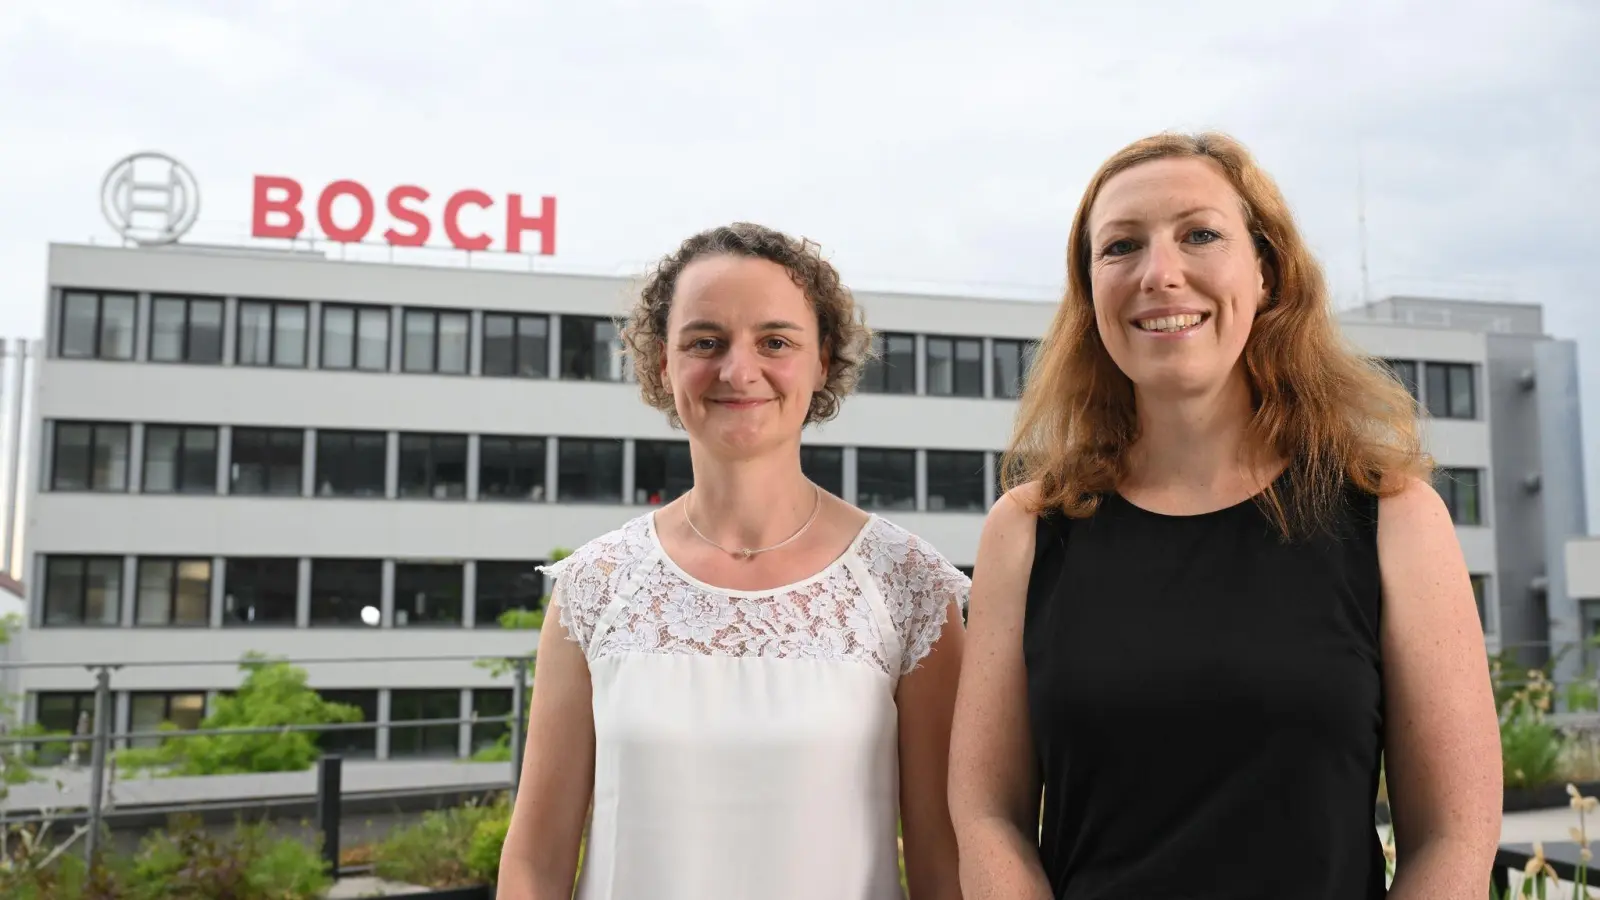 Die Bosch-Führungskräfte Ina Skultety (l) und Isabell Kormos (r) auf der Dachterrasse eines Firmengebäudes in Stuttgart. (Foto: Bernd Weißbrod/dpa)